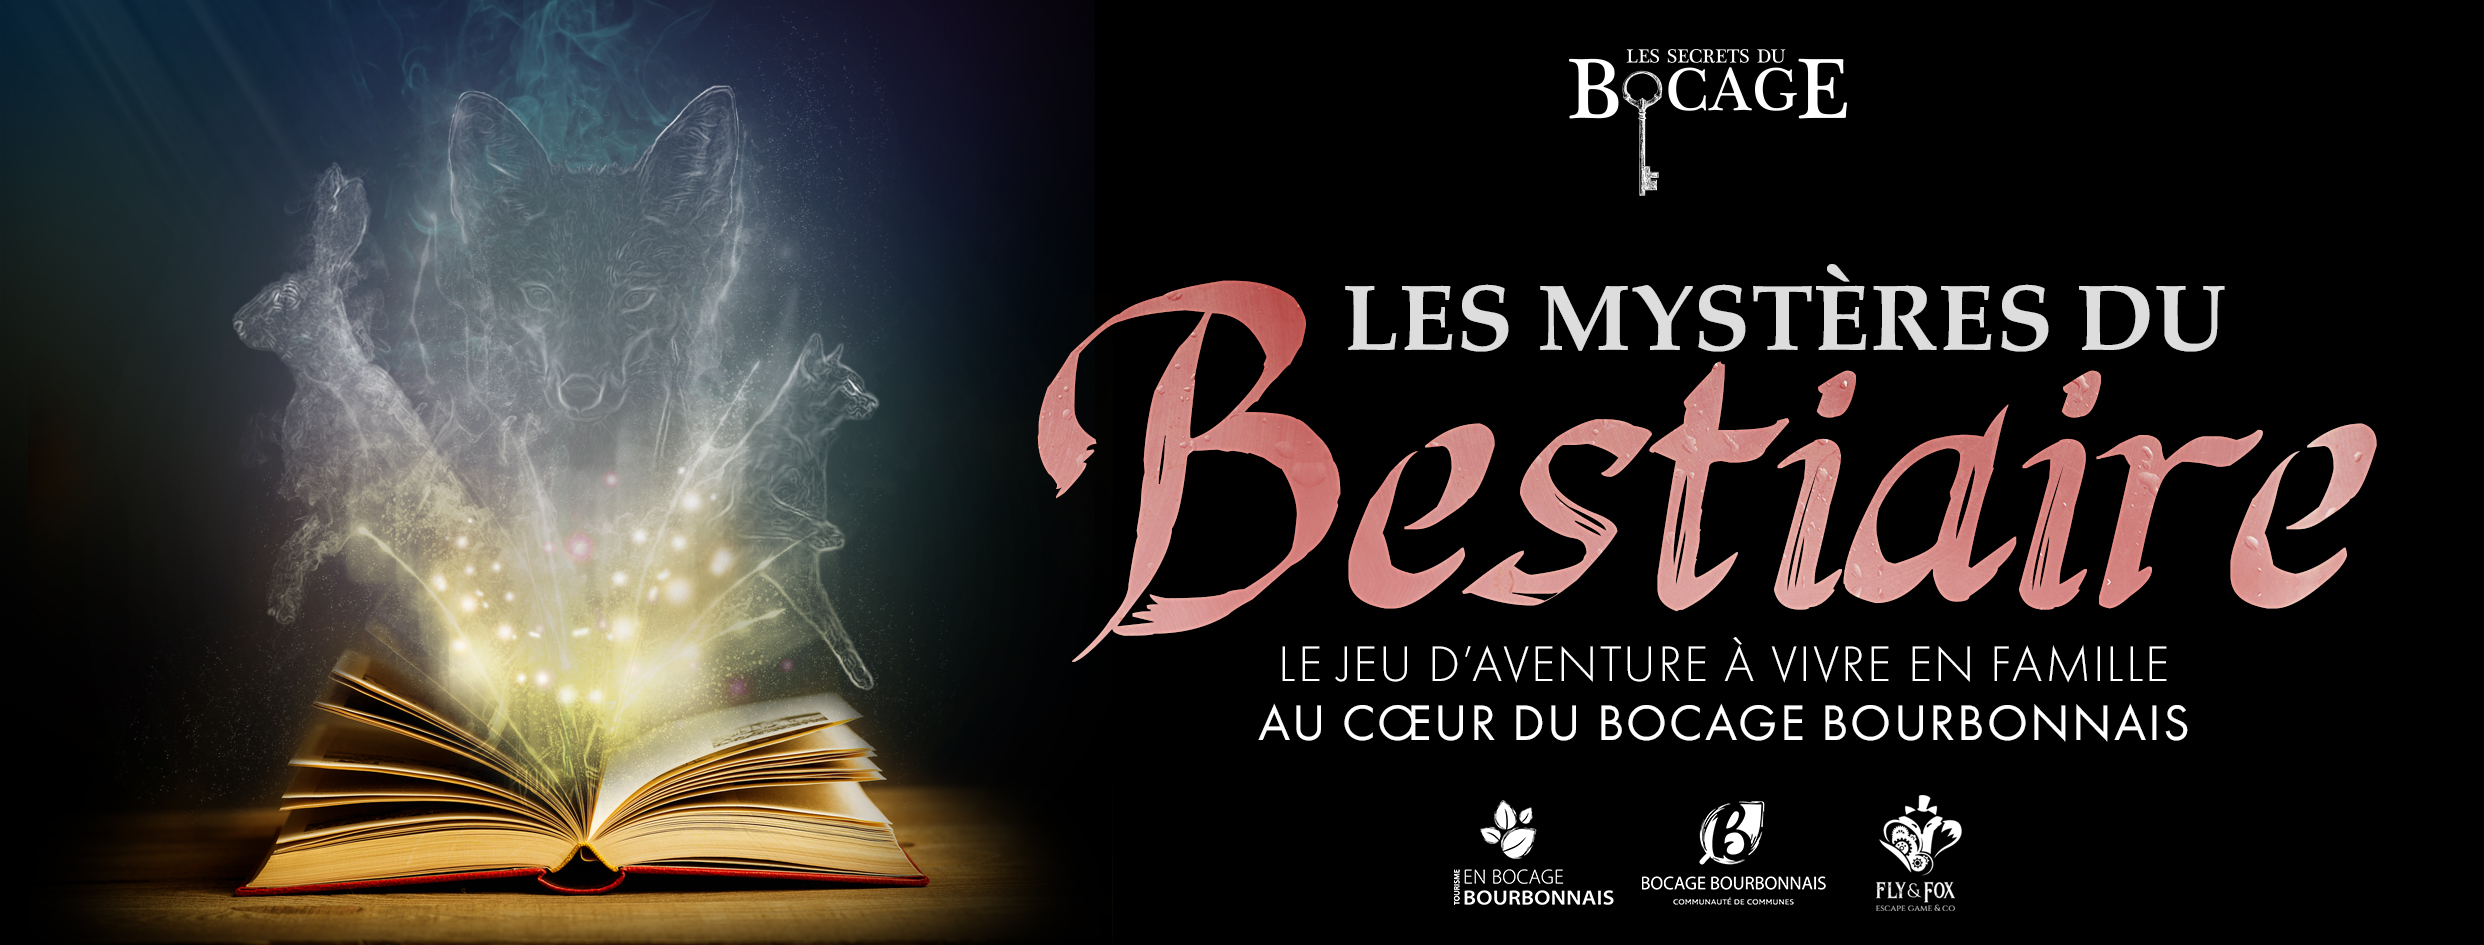 Les Mystères du Bestiaire : le jeu d'aventure à vivre en famille au coeur du Bocage Bourbonnais